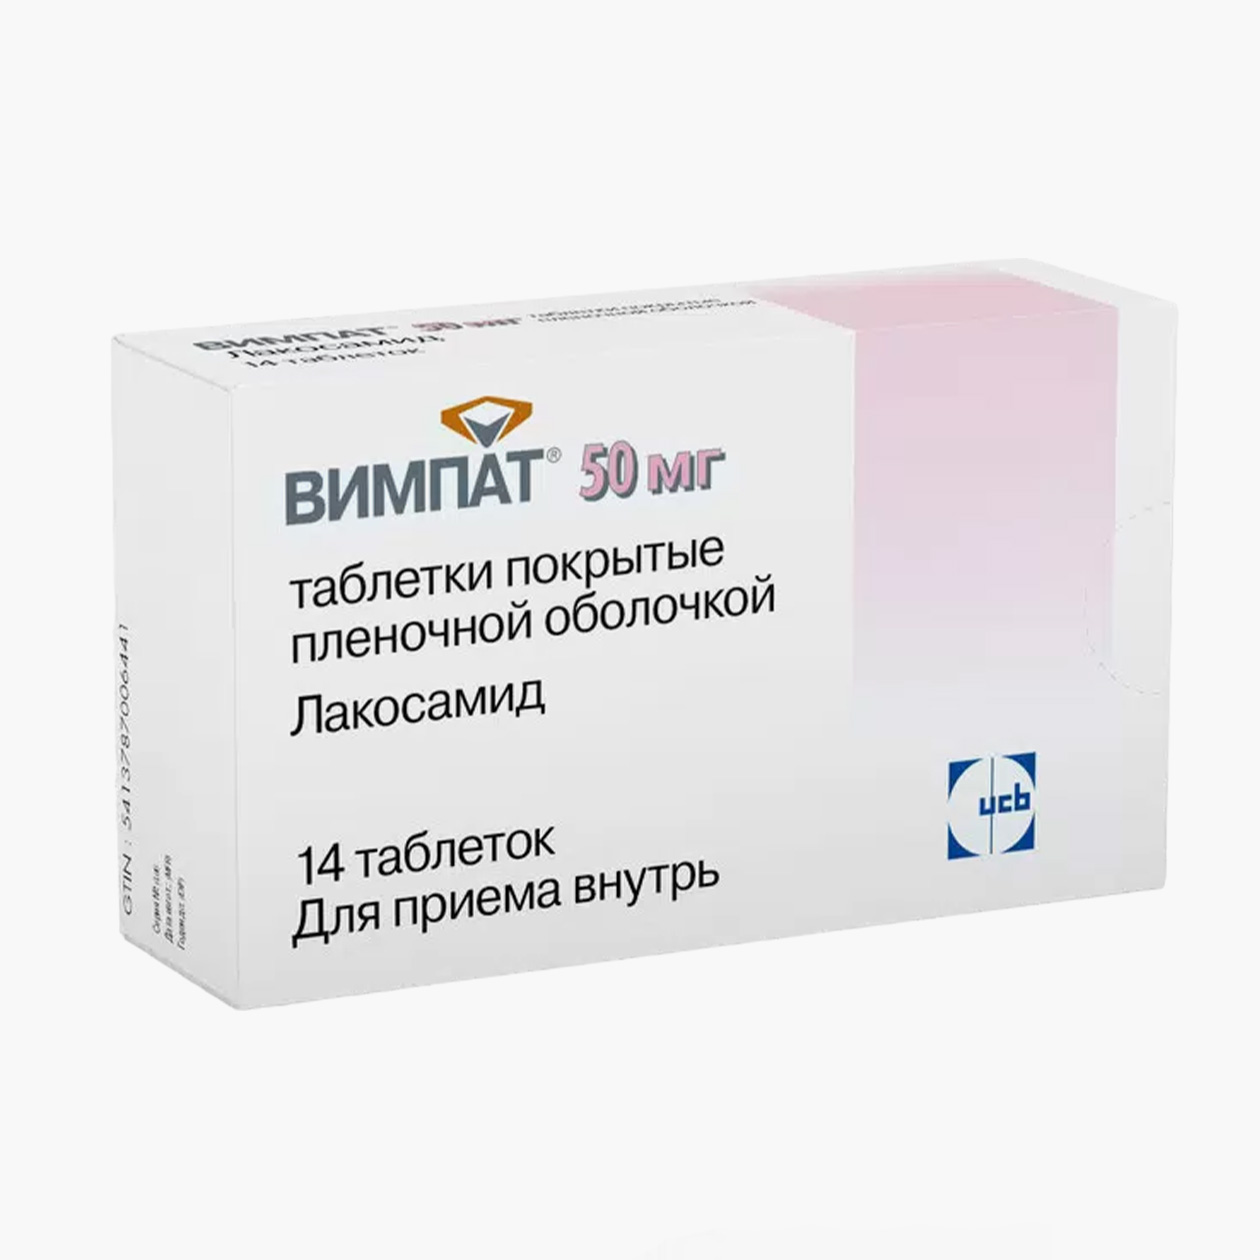 «Вимпат». Стоимость 14 таблеток в минимальной дозой действующего вещества 50 мг начинается от 250 ₽. Источник: eapteka.ru